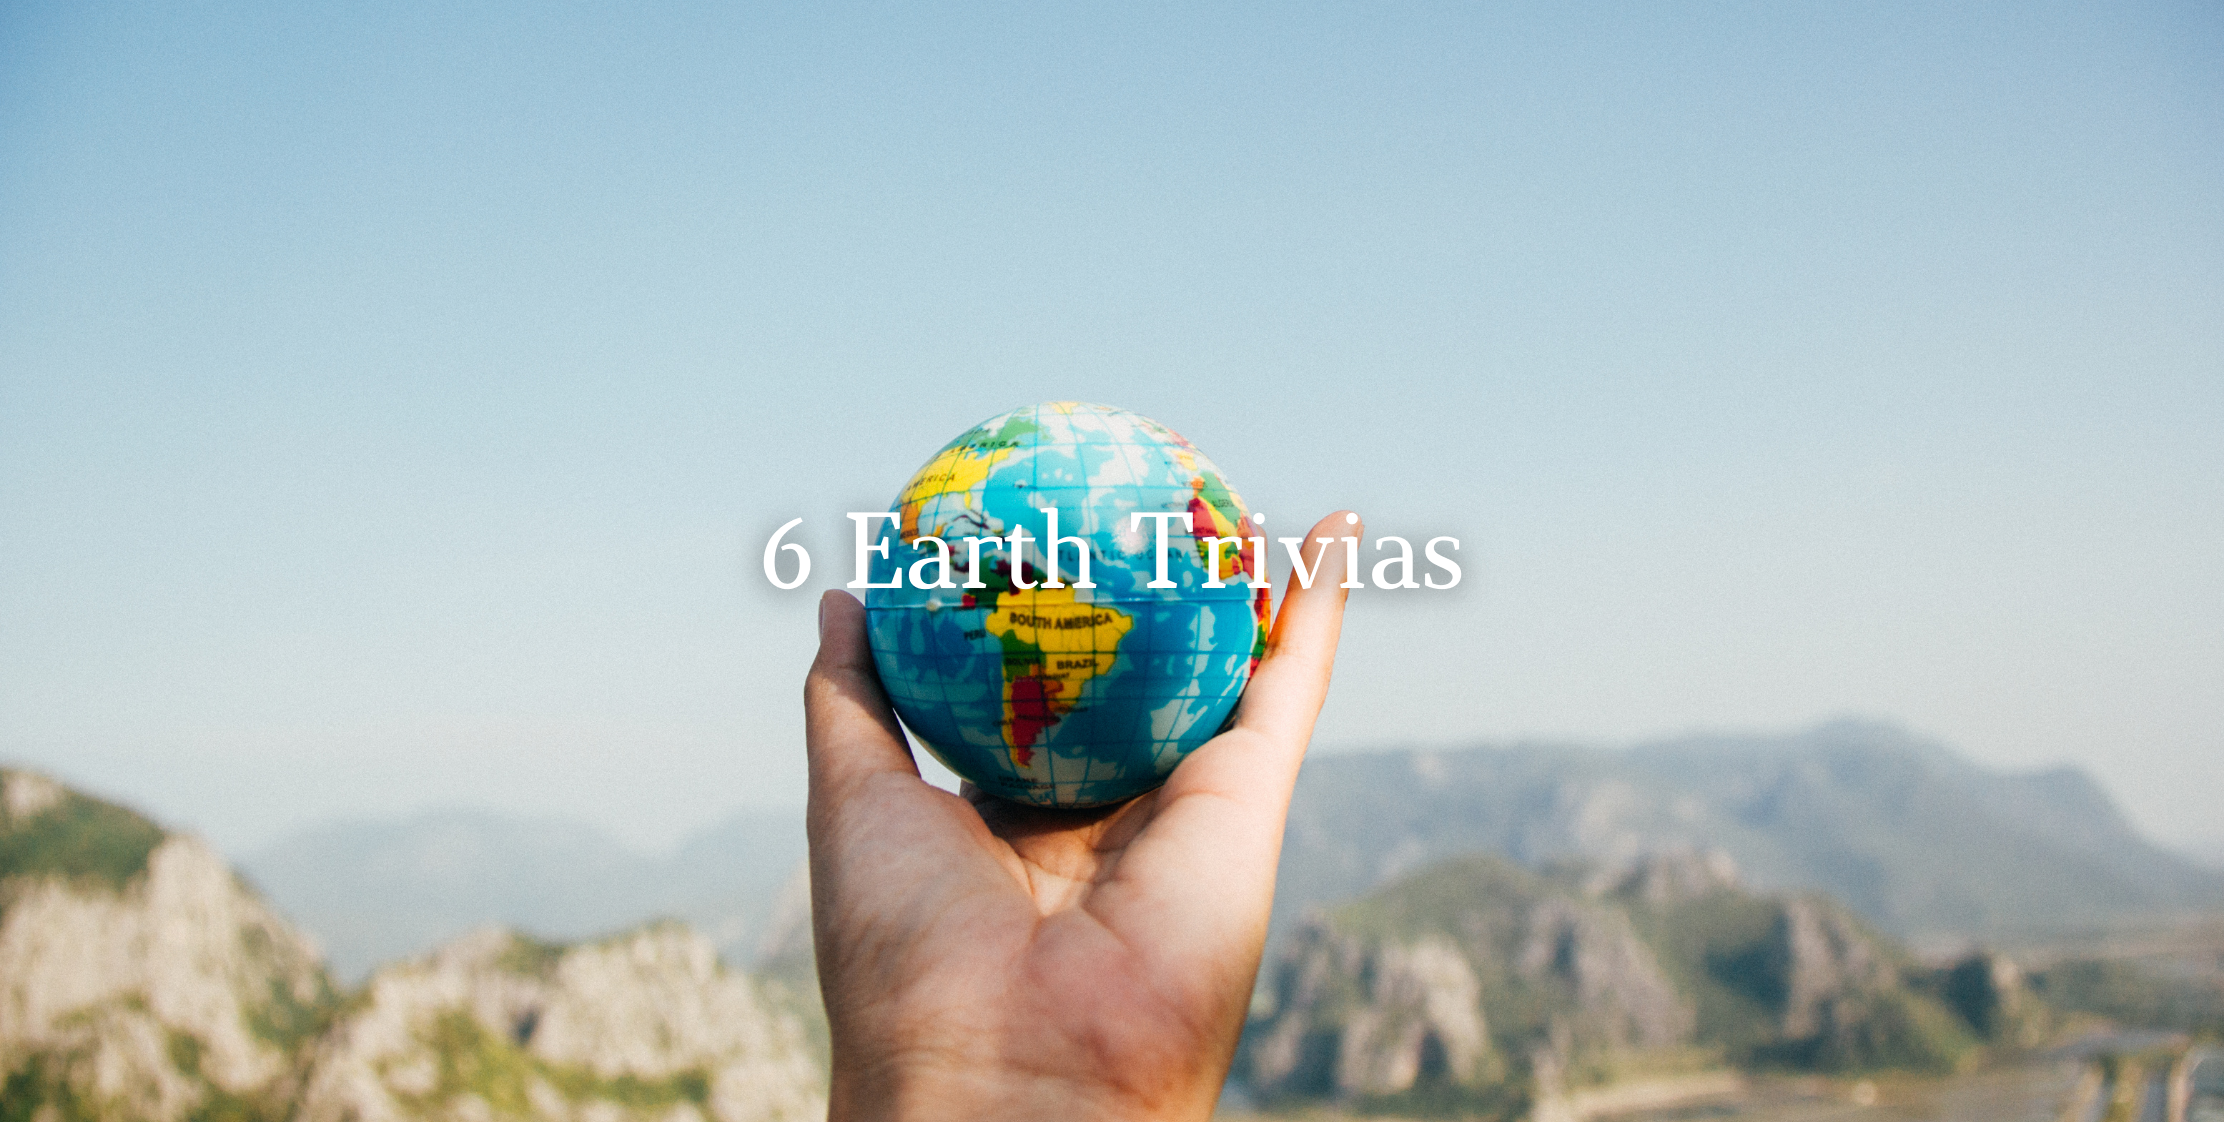 6 Earth Trivias